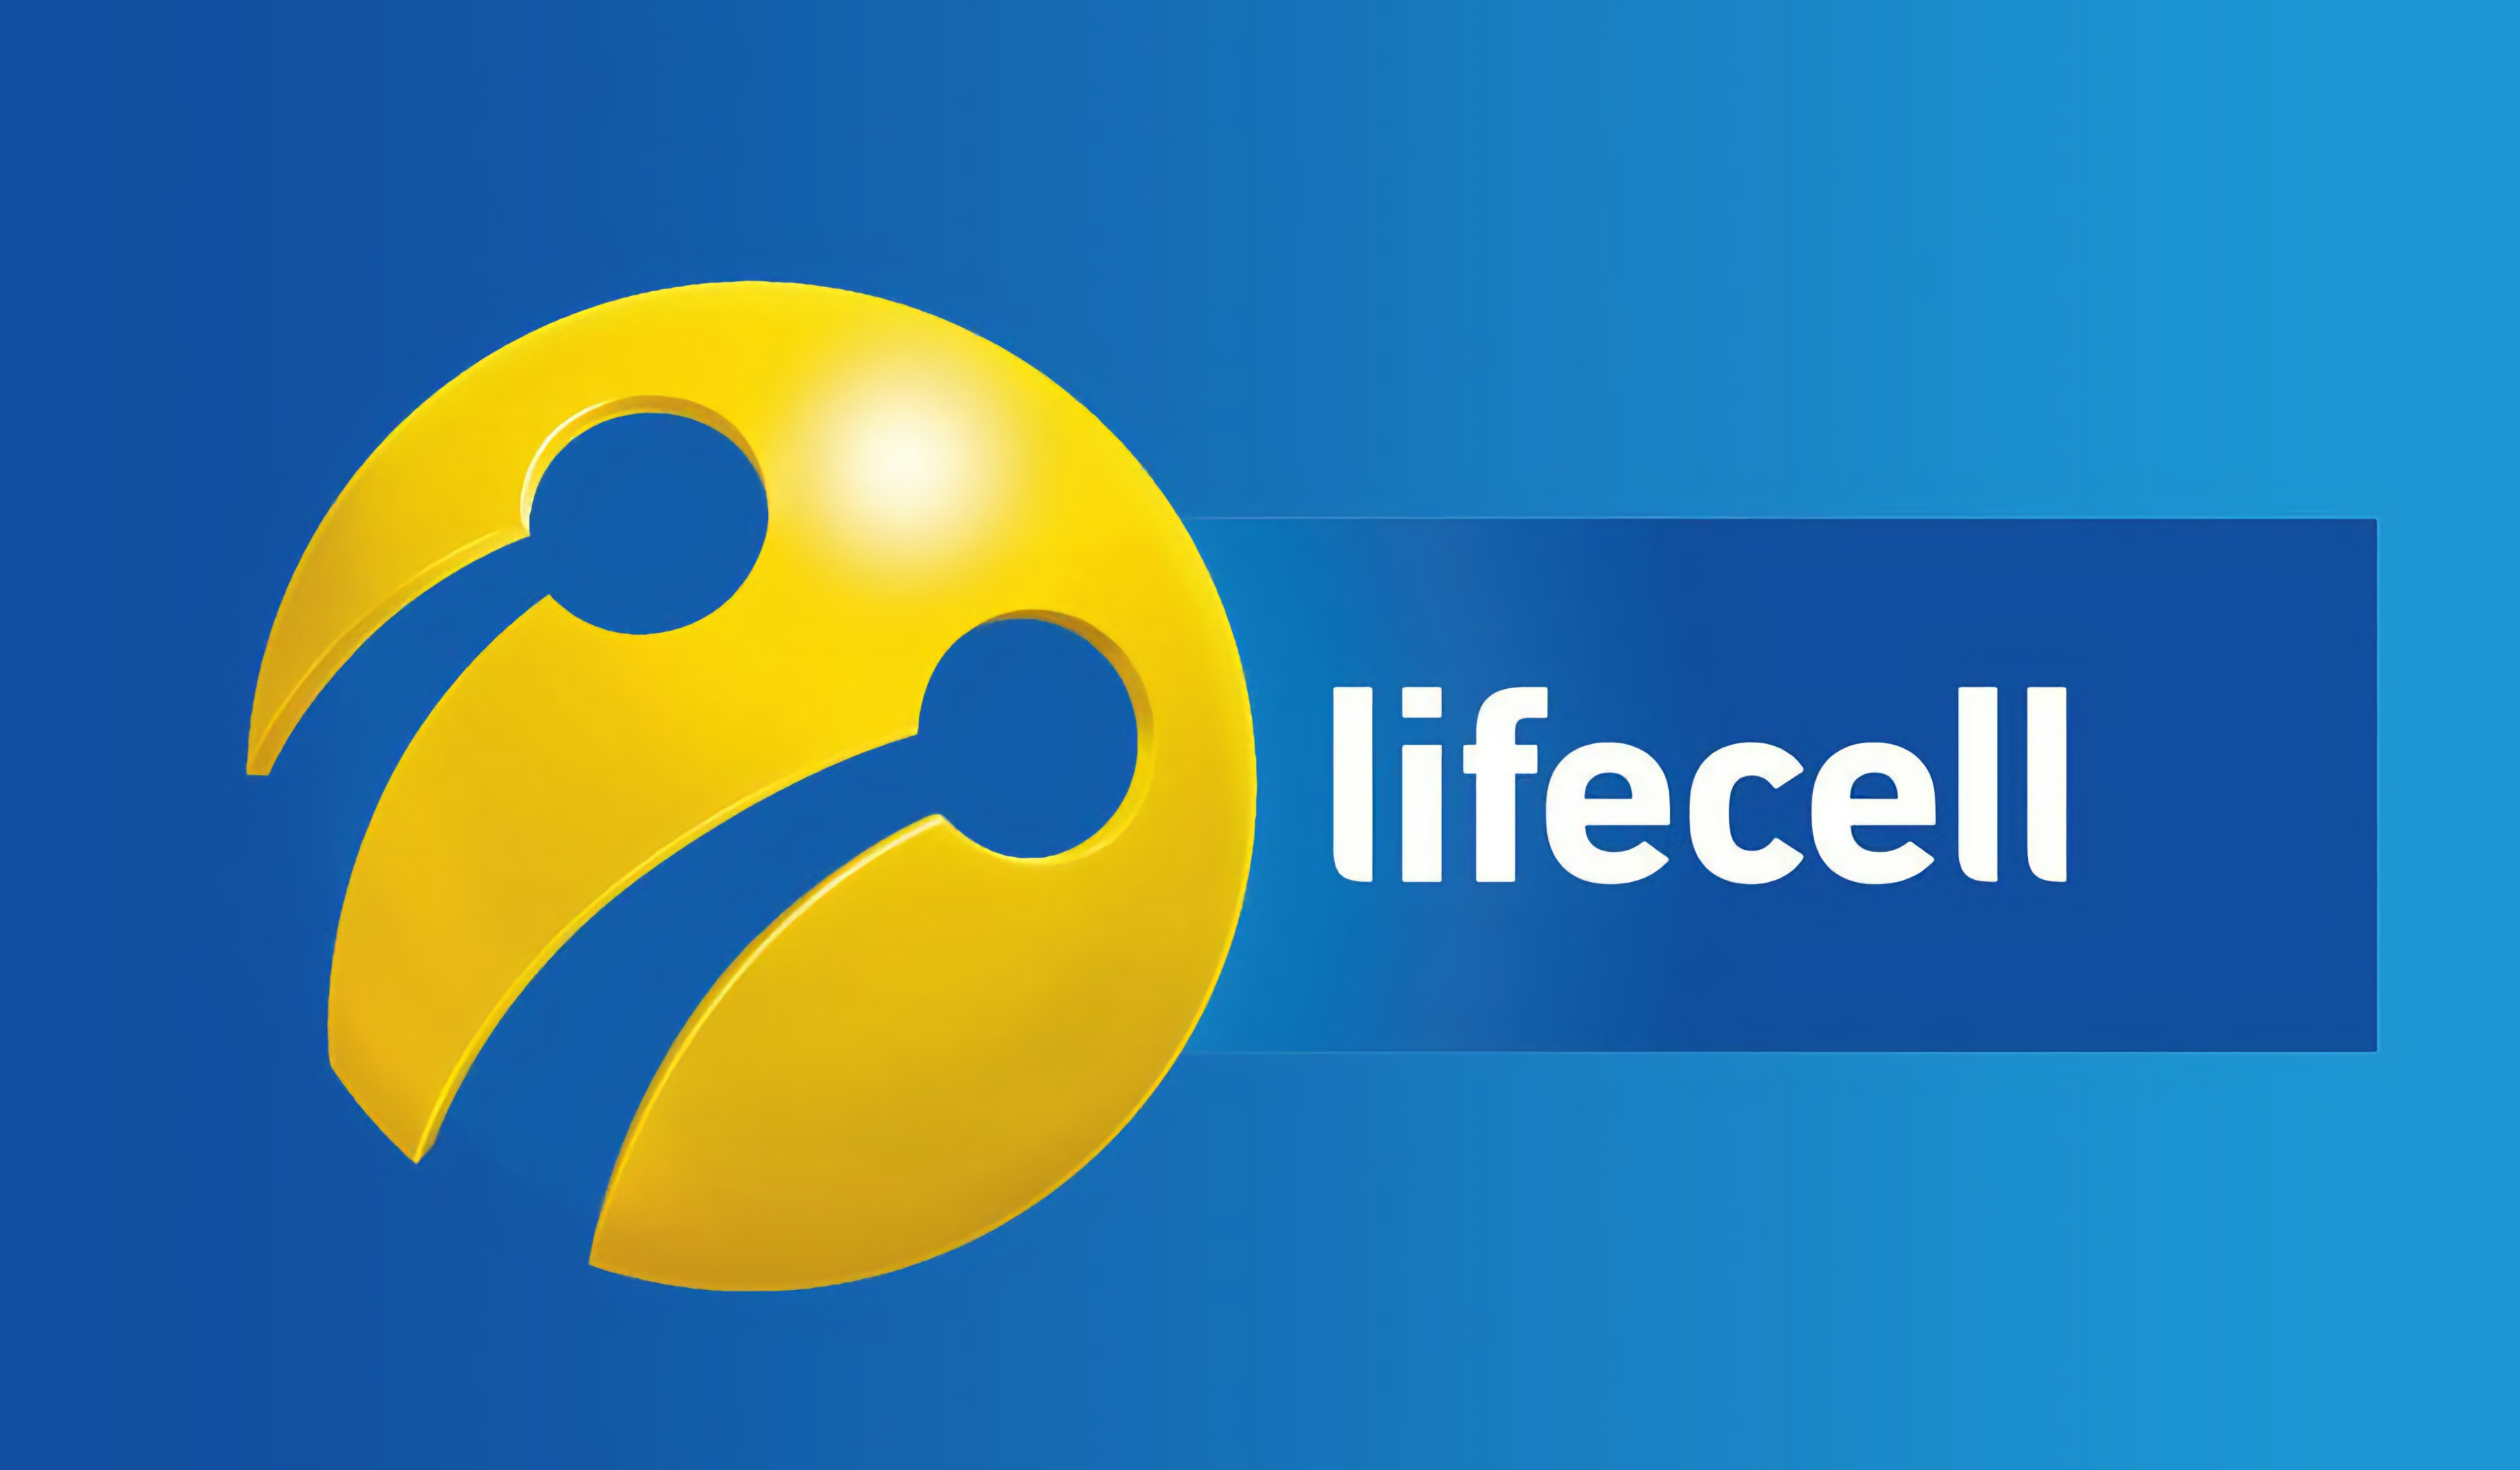 lifecell анонсировал «Интернет БЕЗМЕЖ»: новый тарифный план за 70 грн без ограничений интернет-трафика | gagadget.com